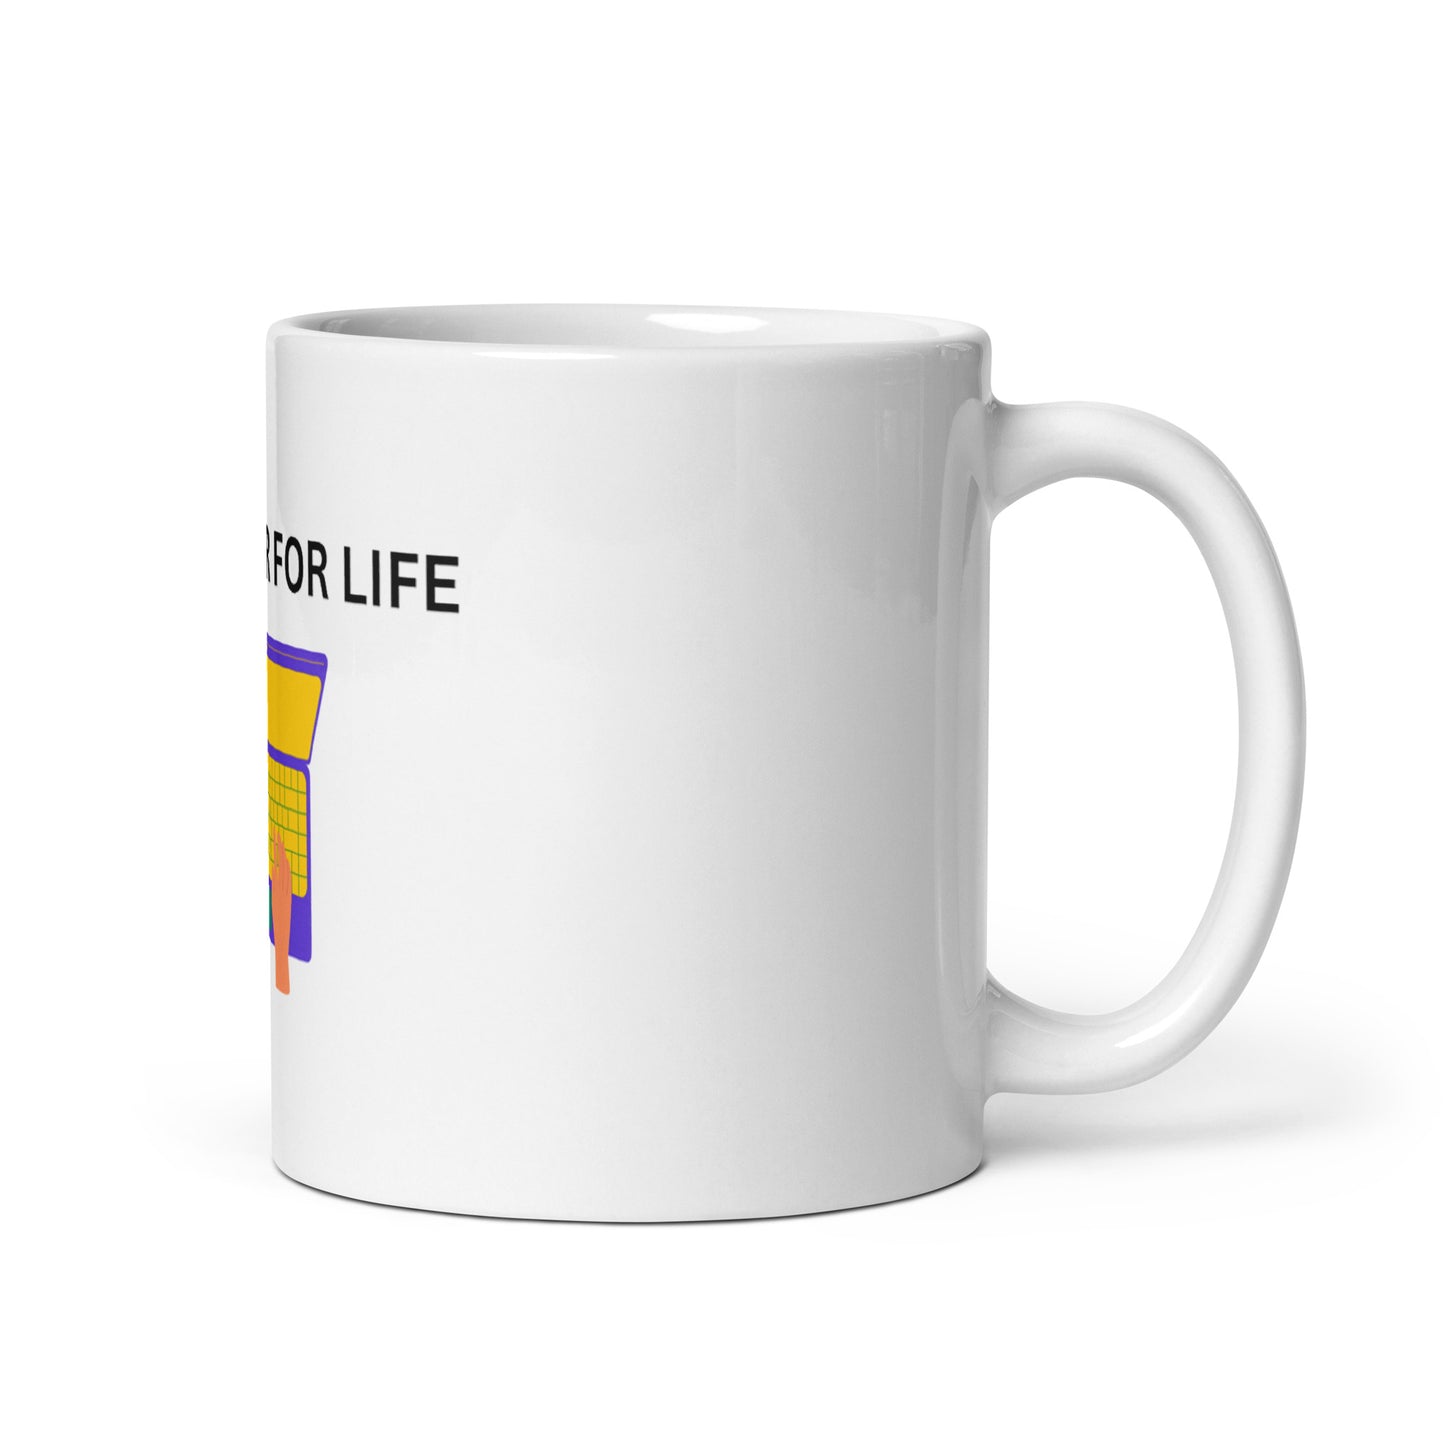 Developer For Life mug